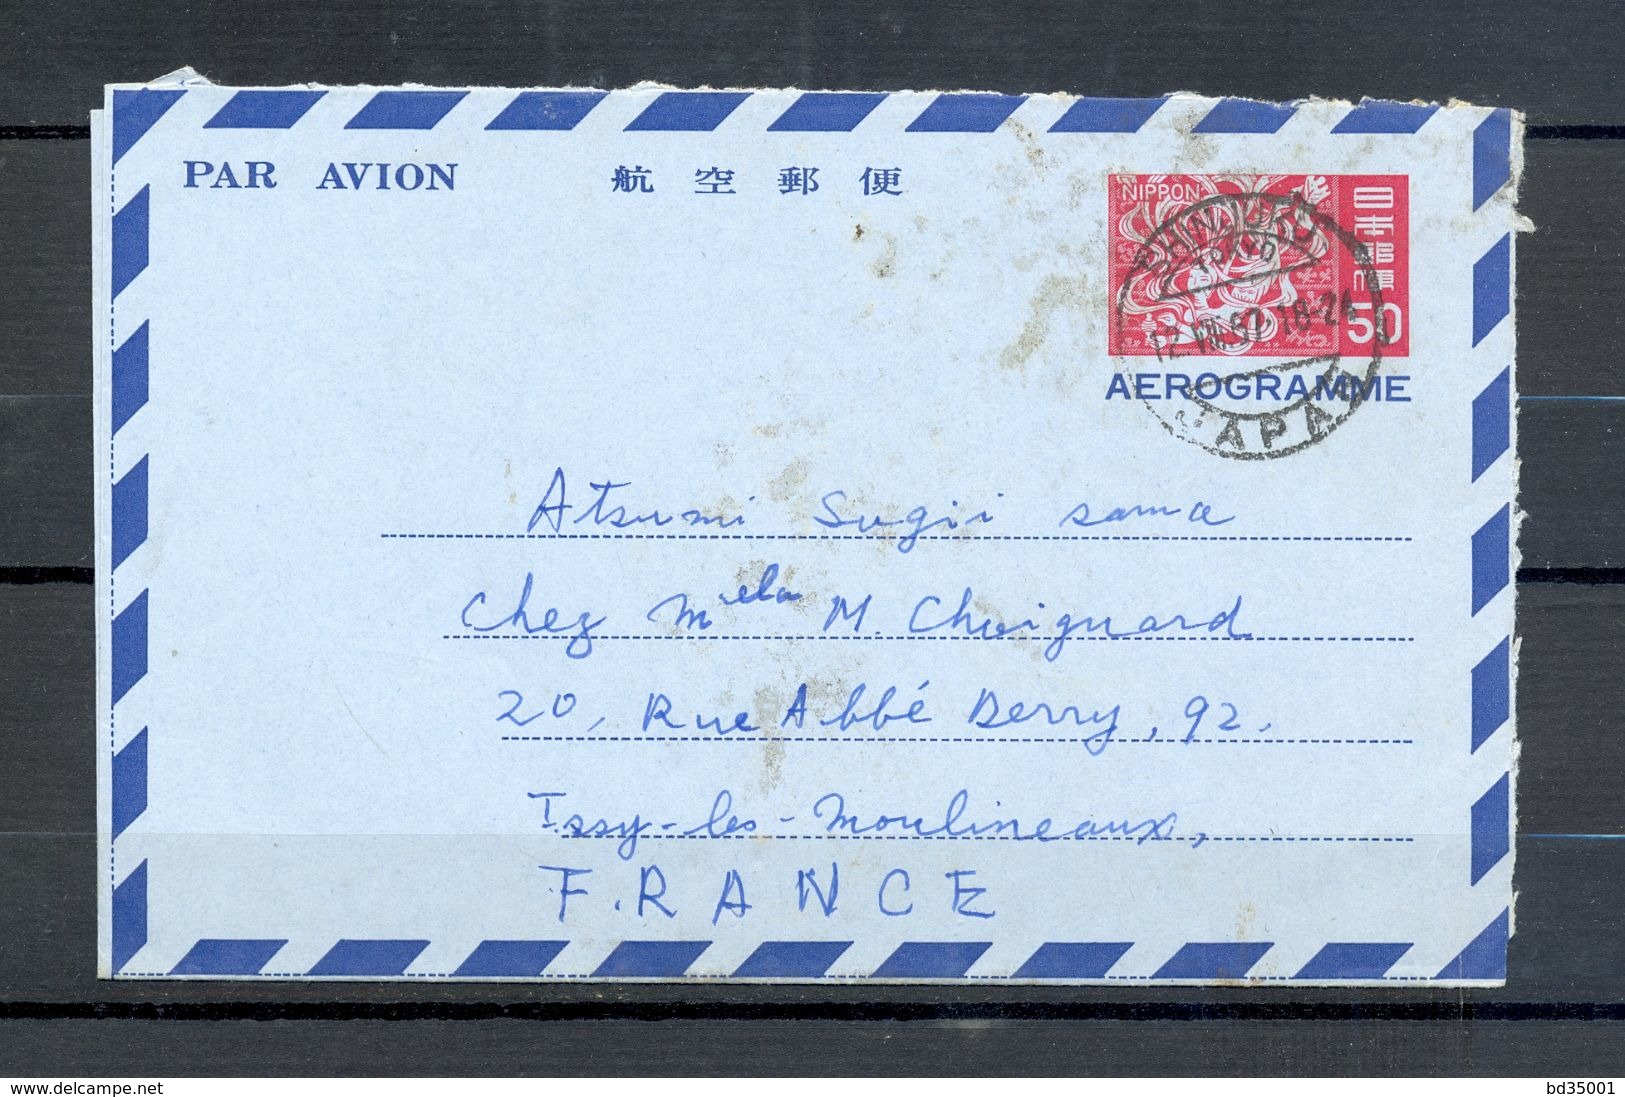 AEROGRAMME AIR LETTER PAR AVION - JAPON JAPAN - Tokyo Vers Issy Les Moulineaux - 1967 - (5) - Luchtpostbladen